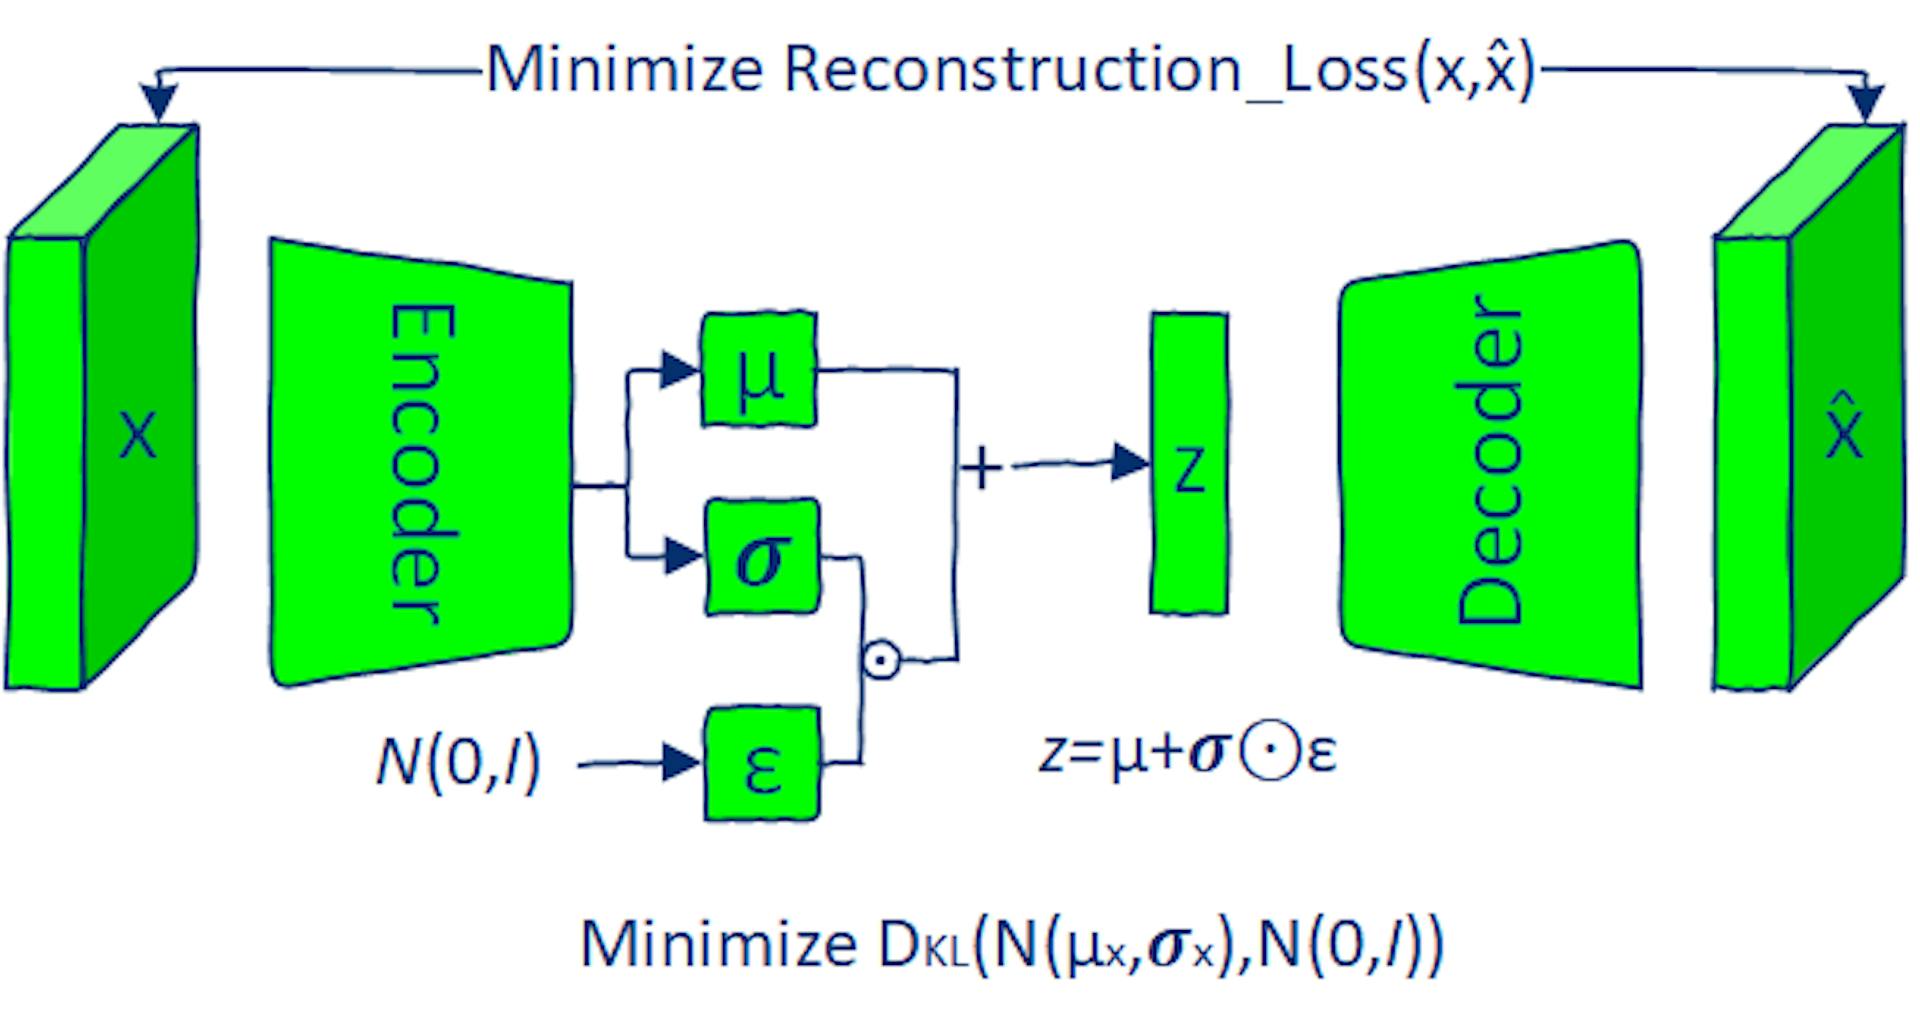 El modelo VAE se entrena minimizando la pérdida de reconstrucción y la pérdida de divergencia KL